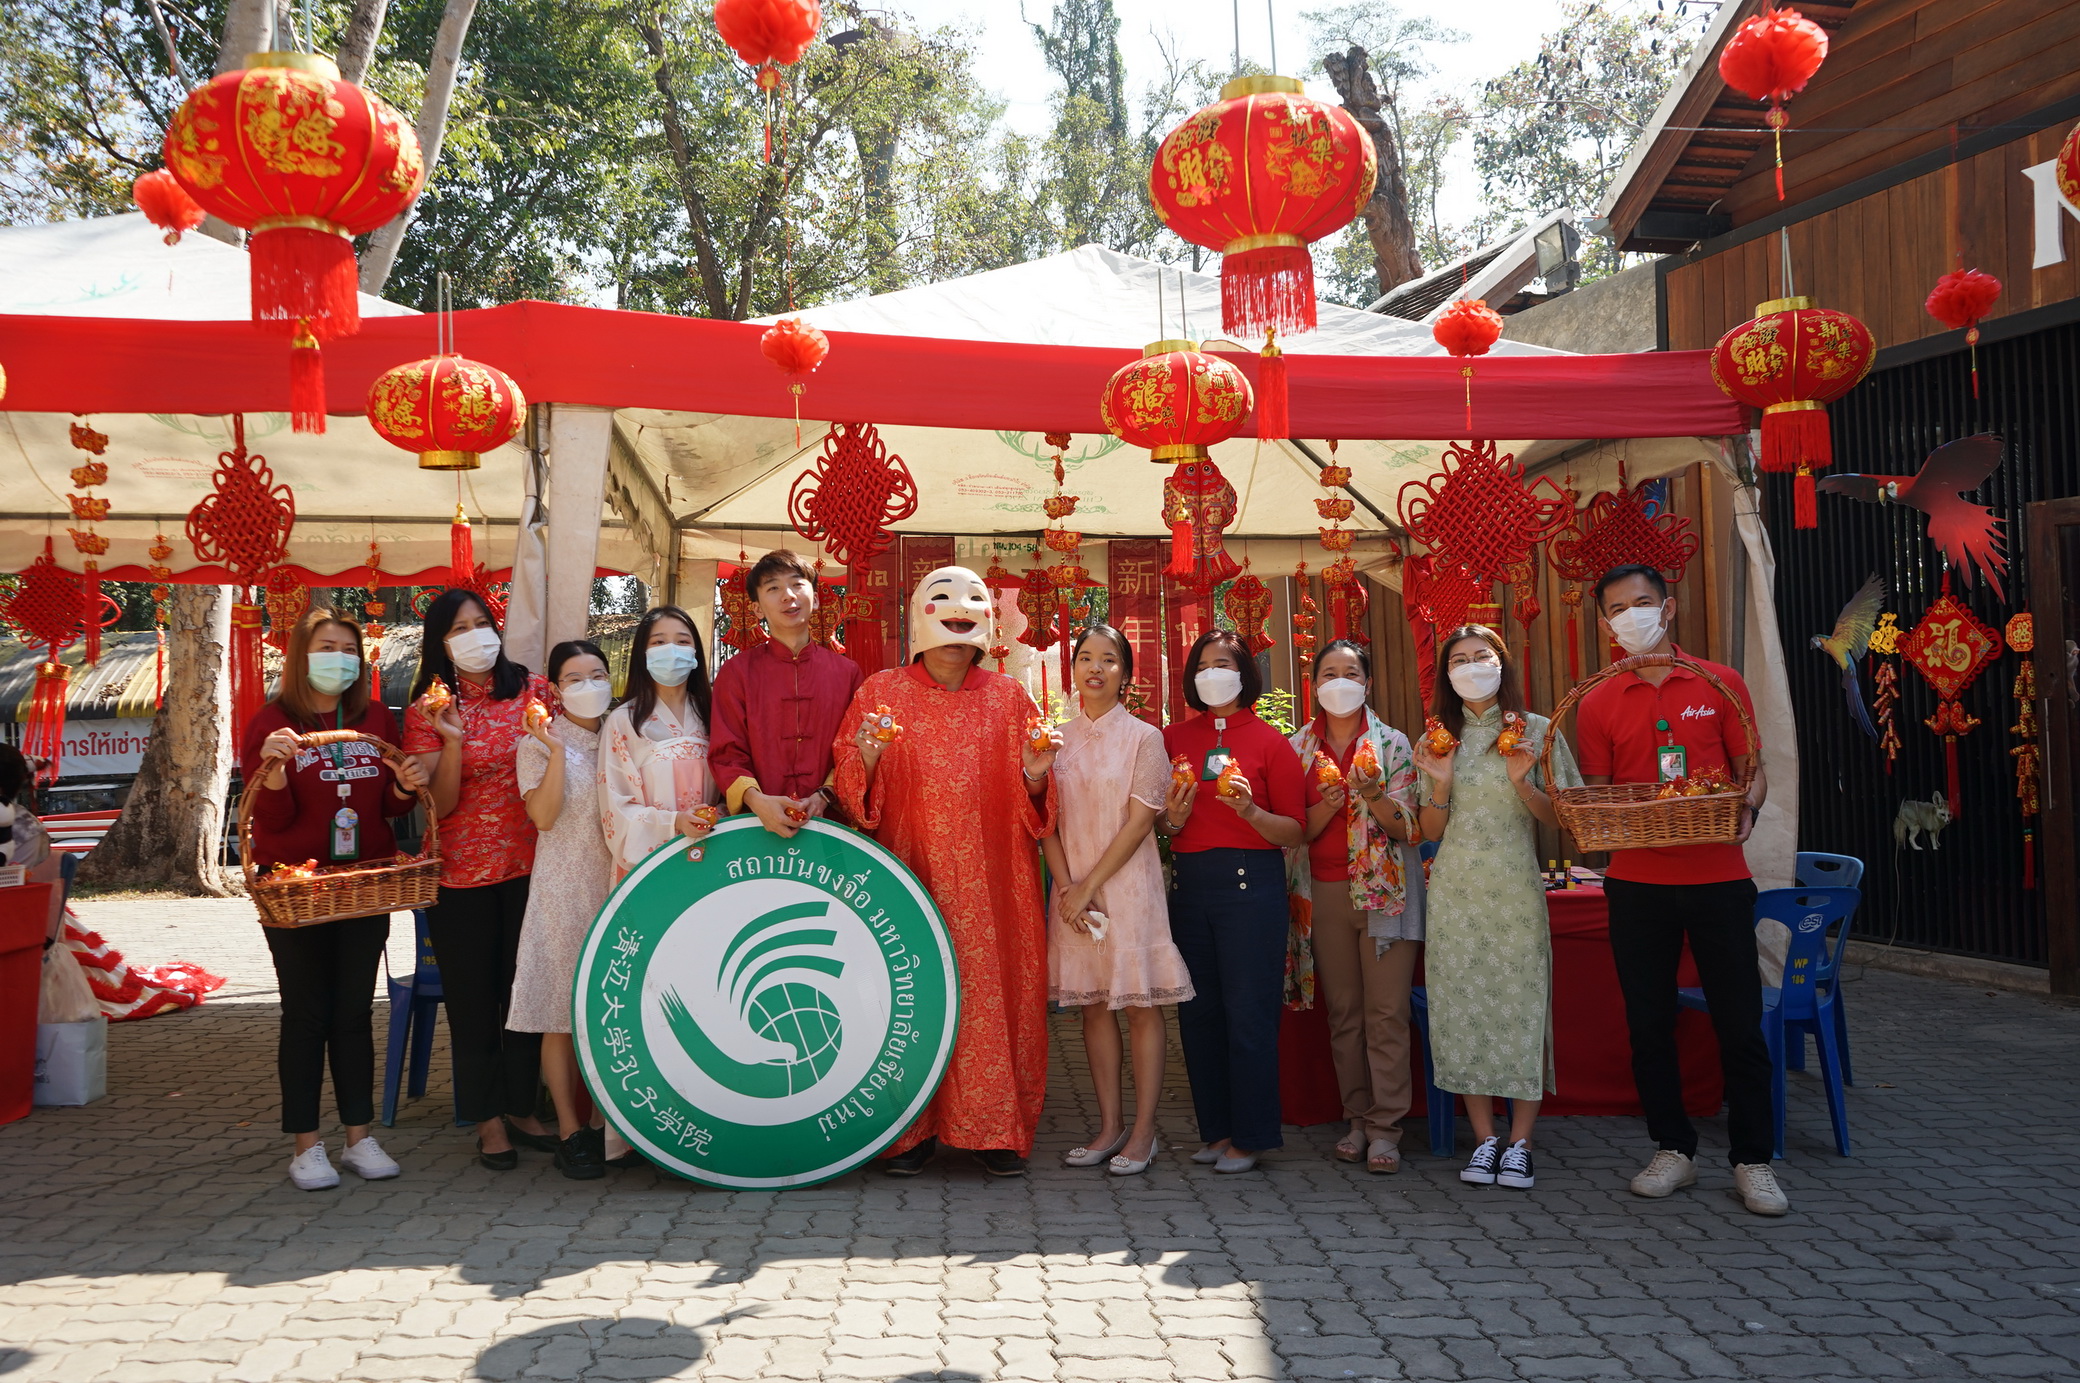 ผู้อำนวยการสวนสัตว์เชียงใหม่ นำขบวนมาสคอตเชิดมังกรคู่ ต้อนรับเทศกาลตรุษจีน